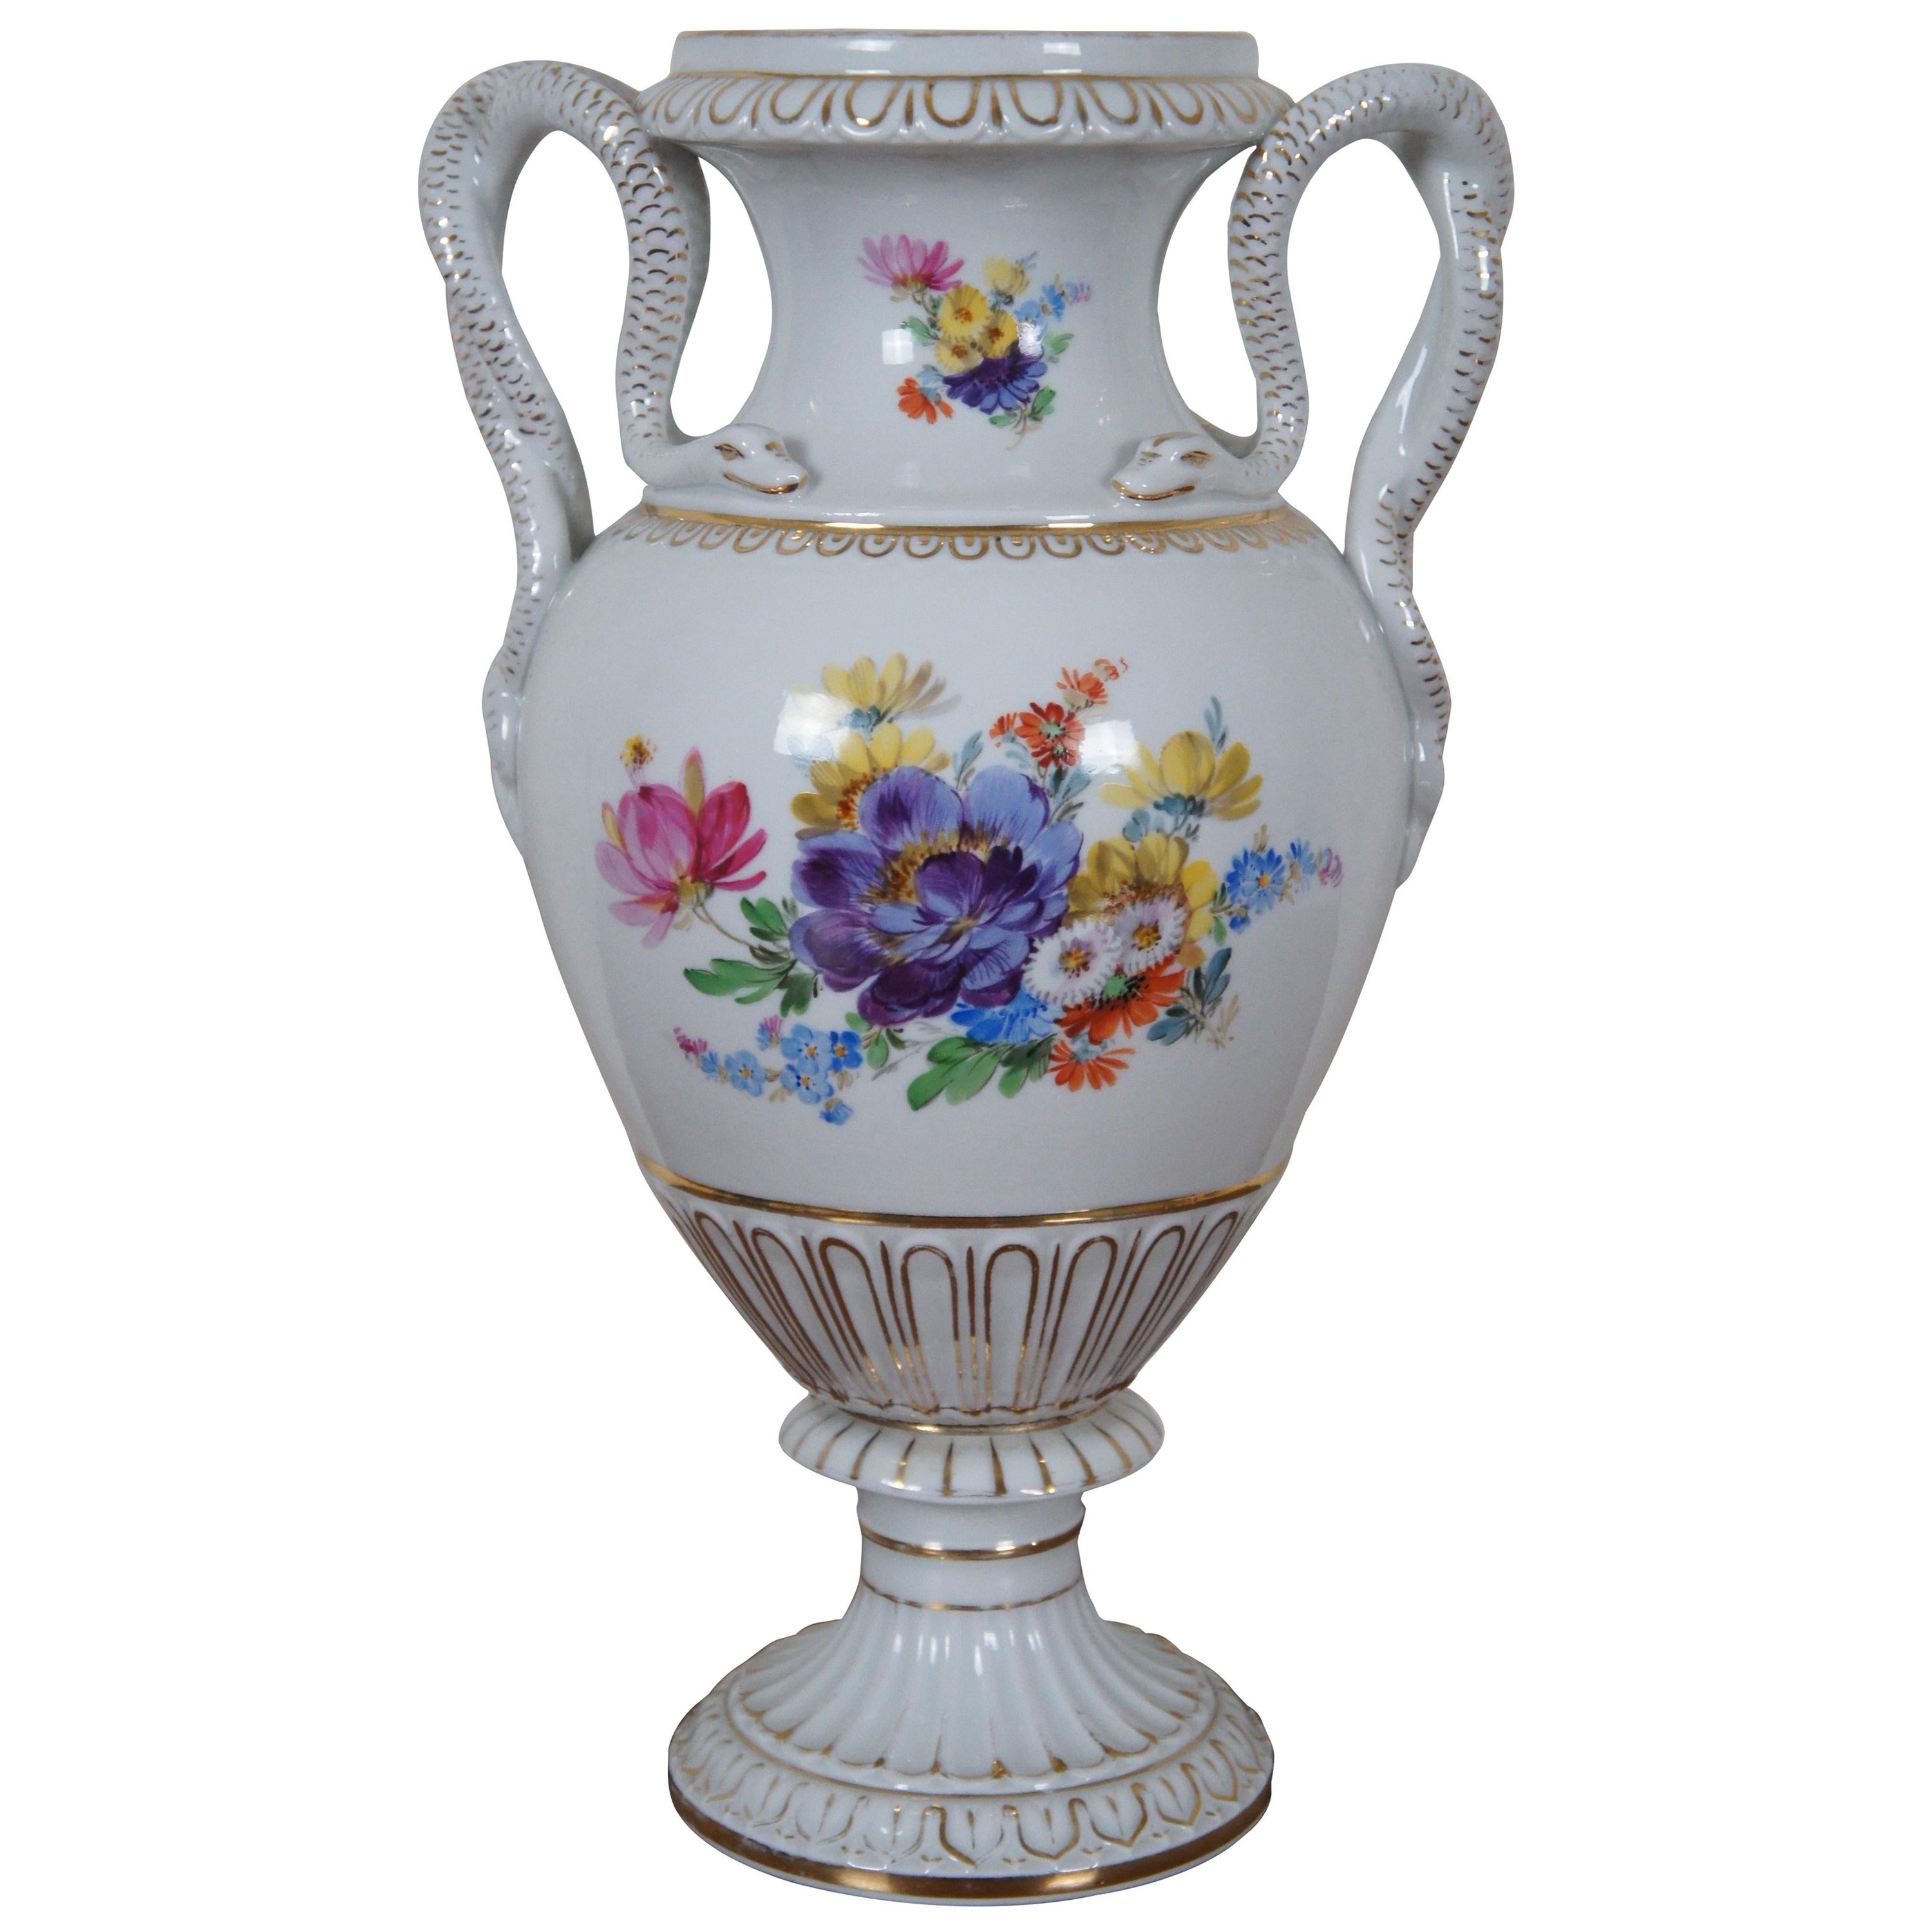 Antiquité allemande Meissen Dresden Porcelain Snake Handle Mantel Urn Vase 12" (vase à urne de cheminée)